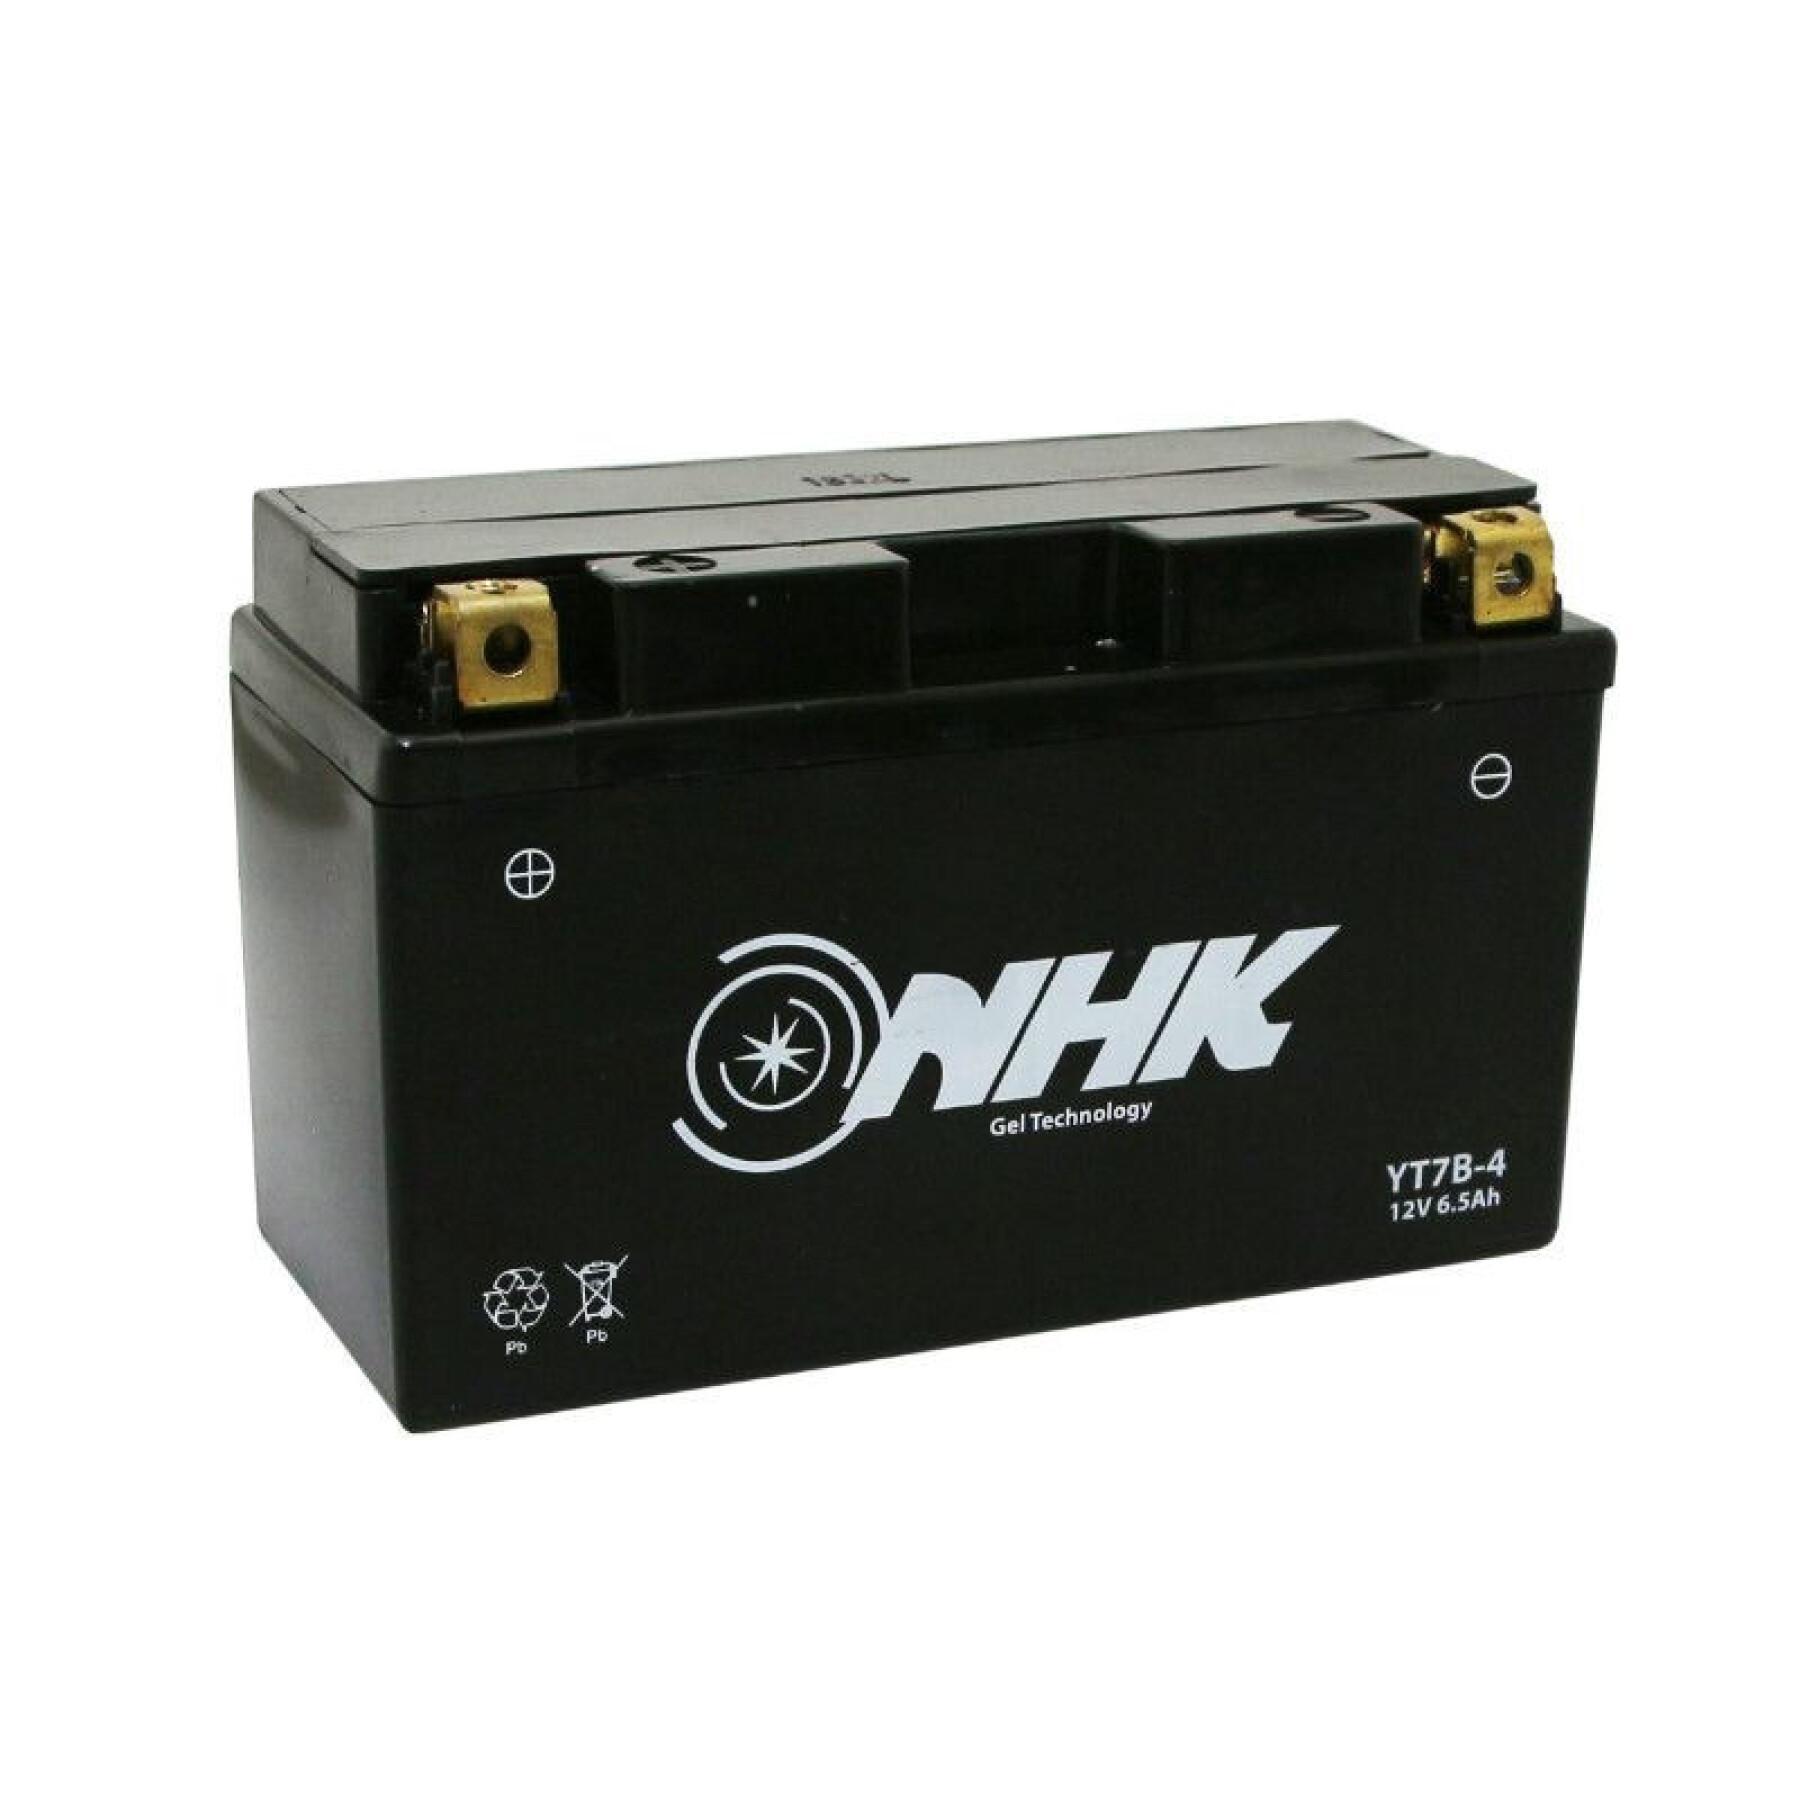 Bateria para motas pronta a usar e sem manutenção NHK NT7B-4